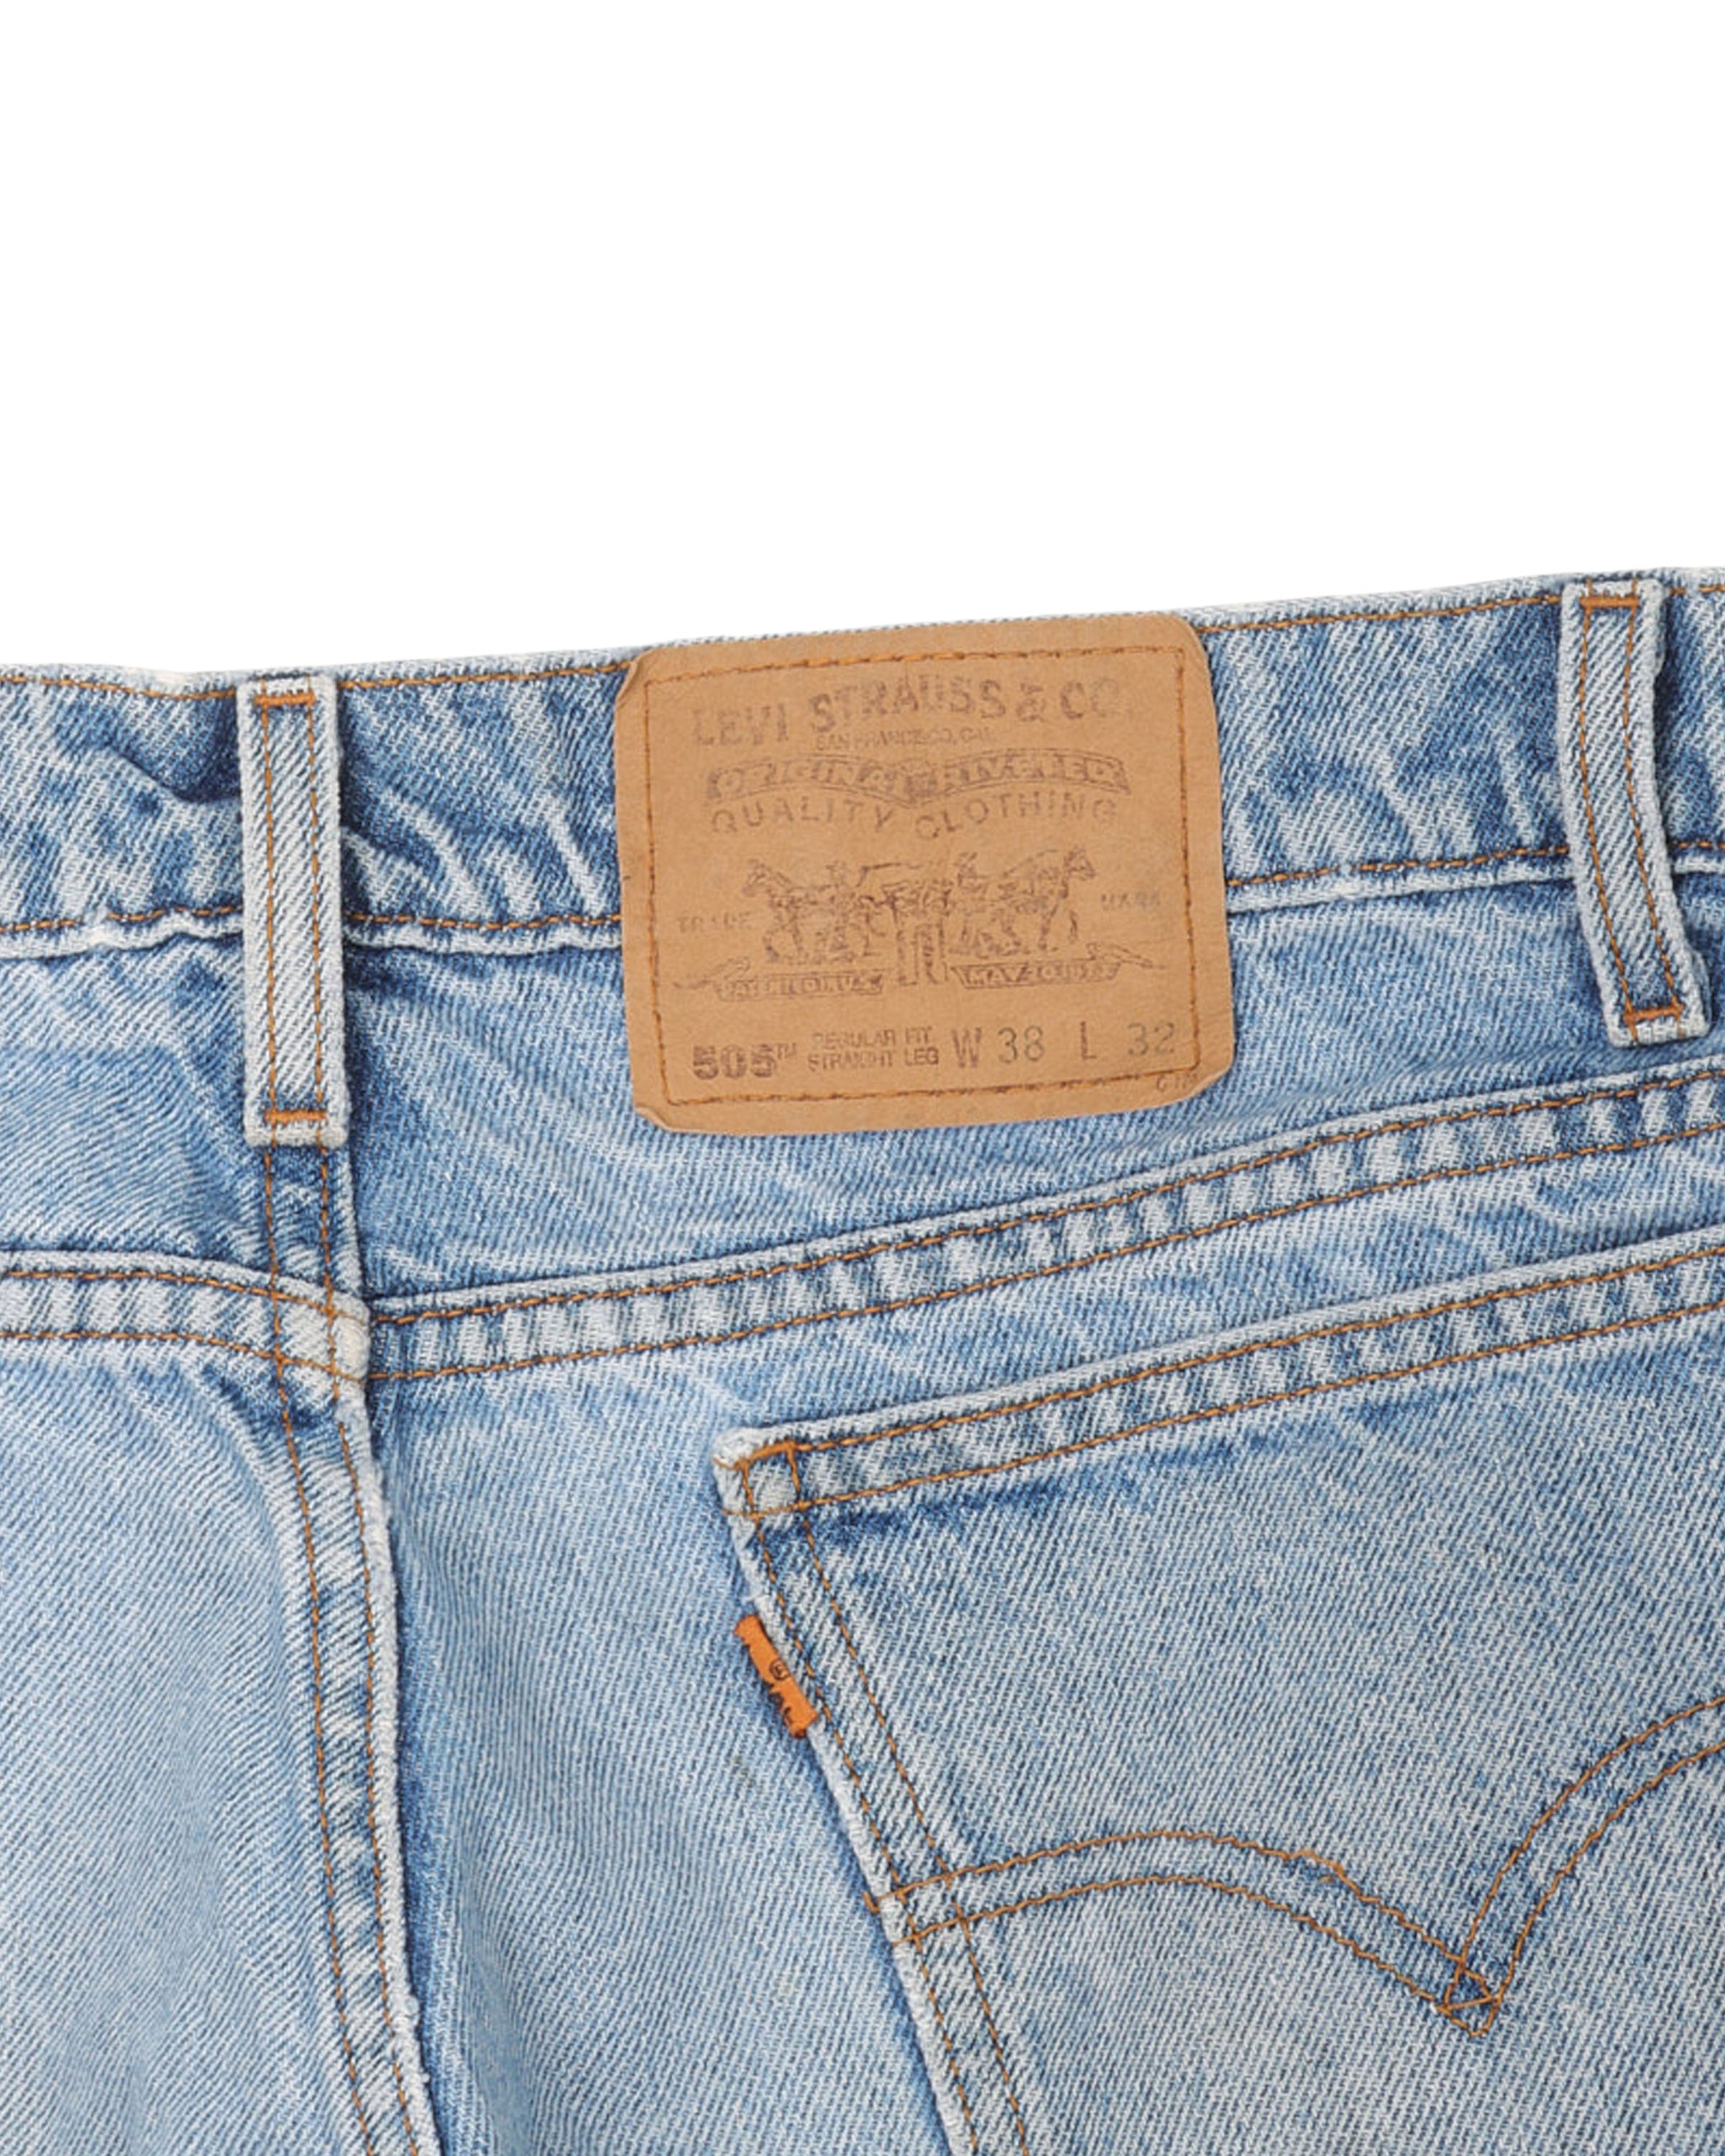 Levi 505 Orange Tab Jeans